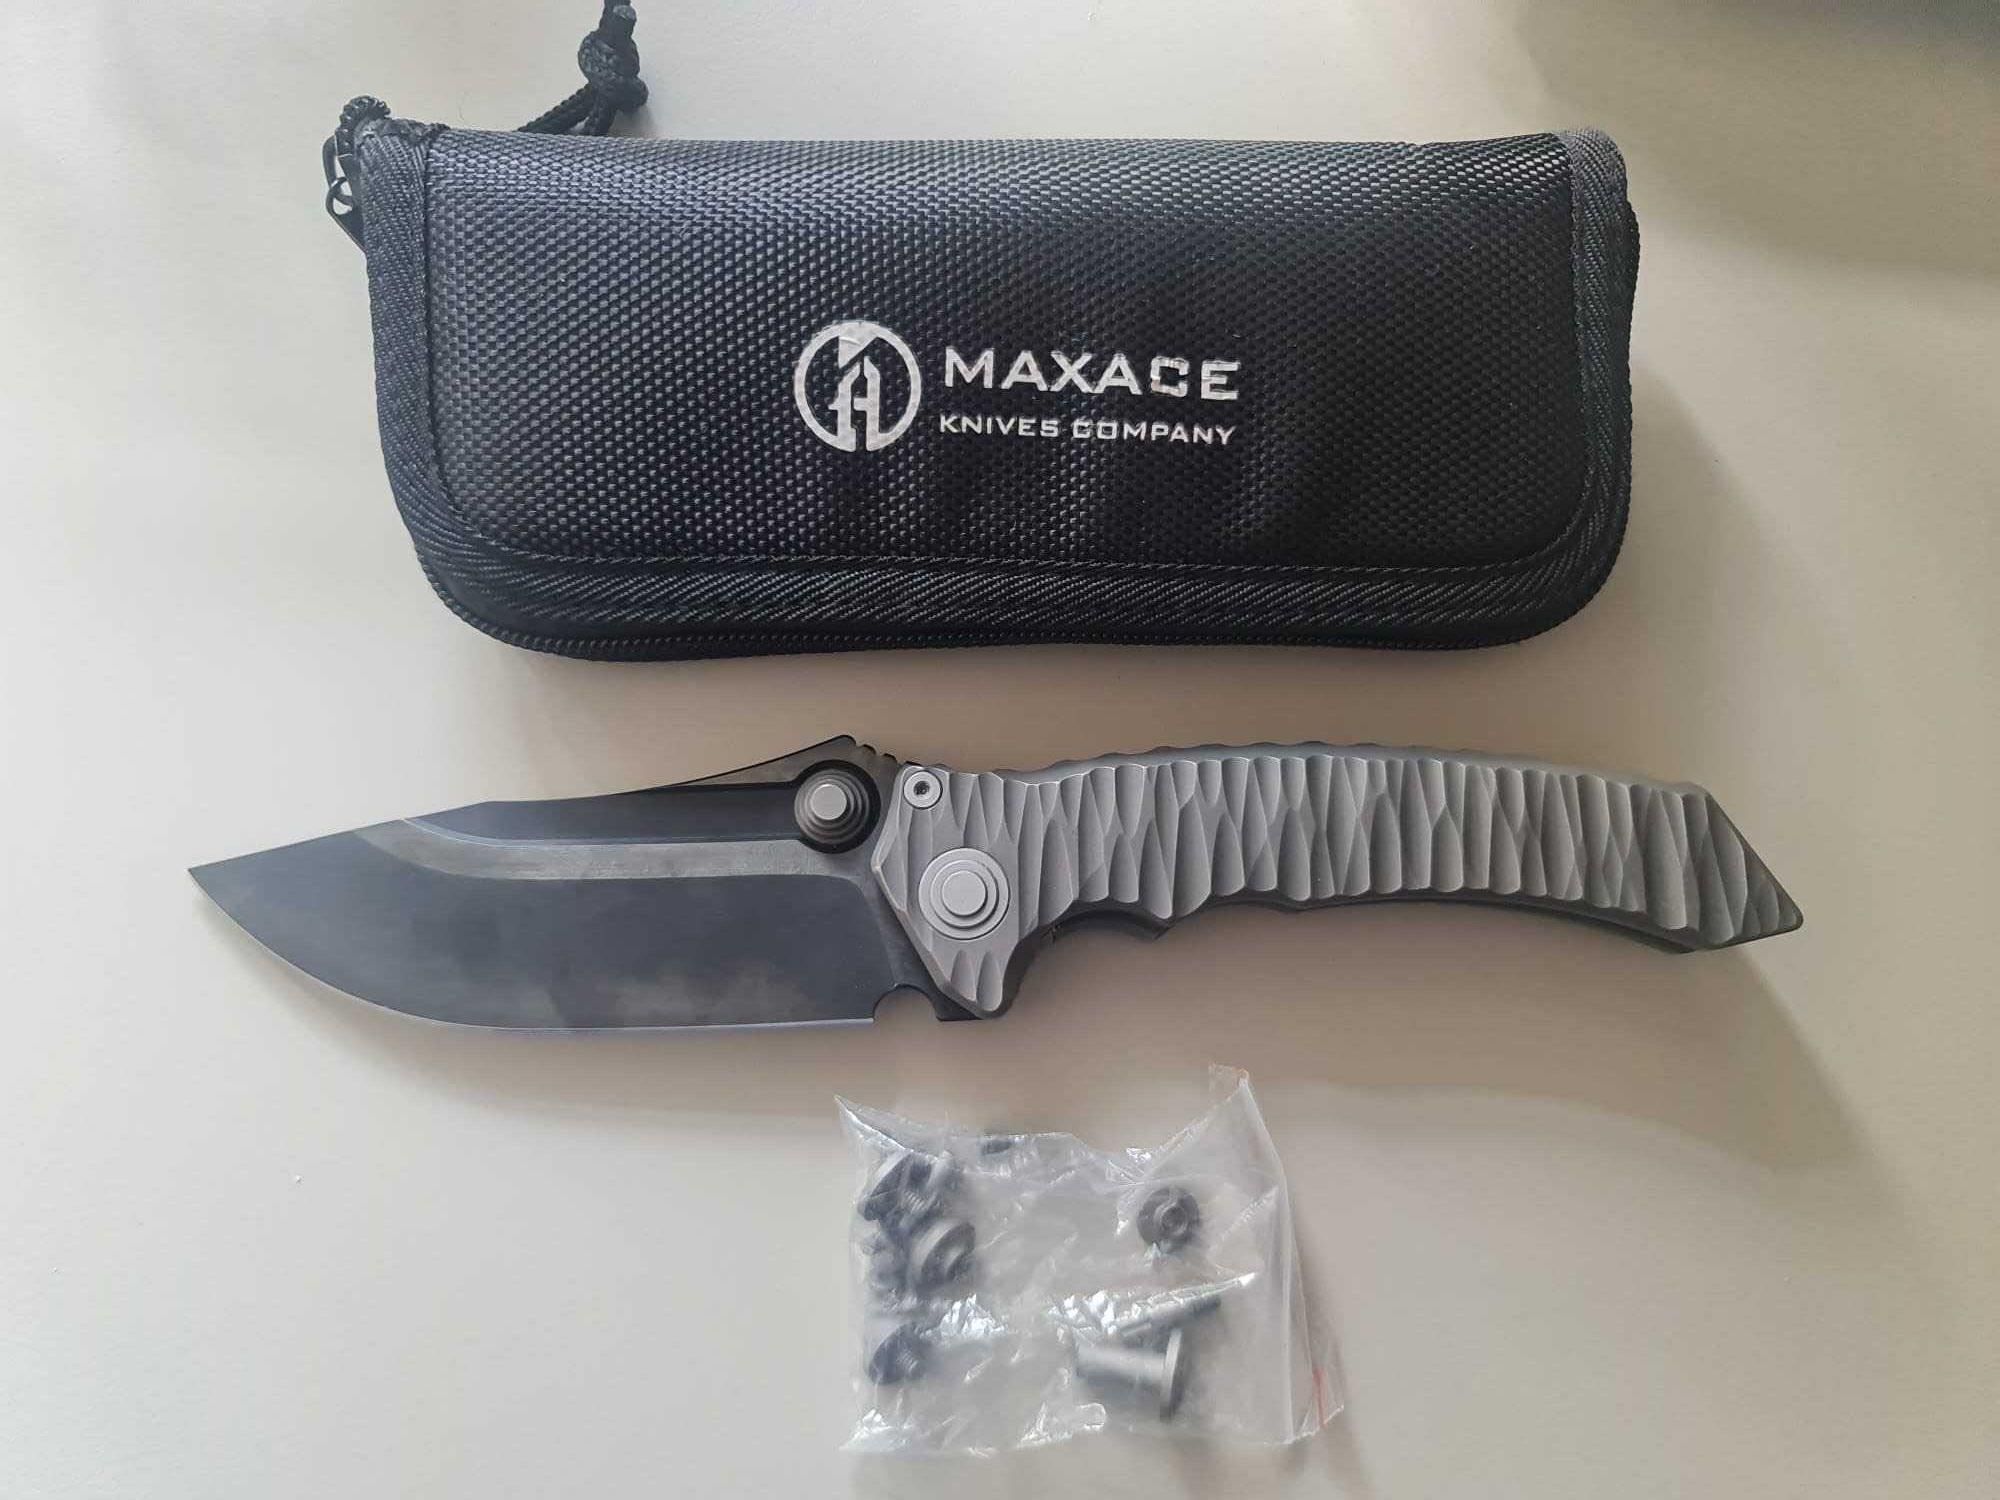 Nóż Maxace Knives Company